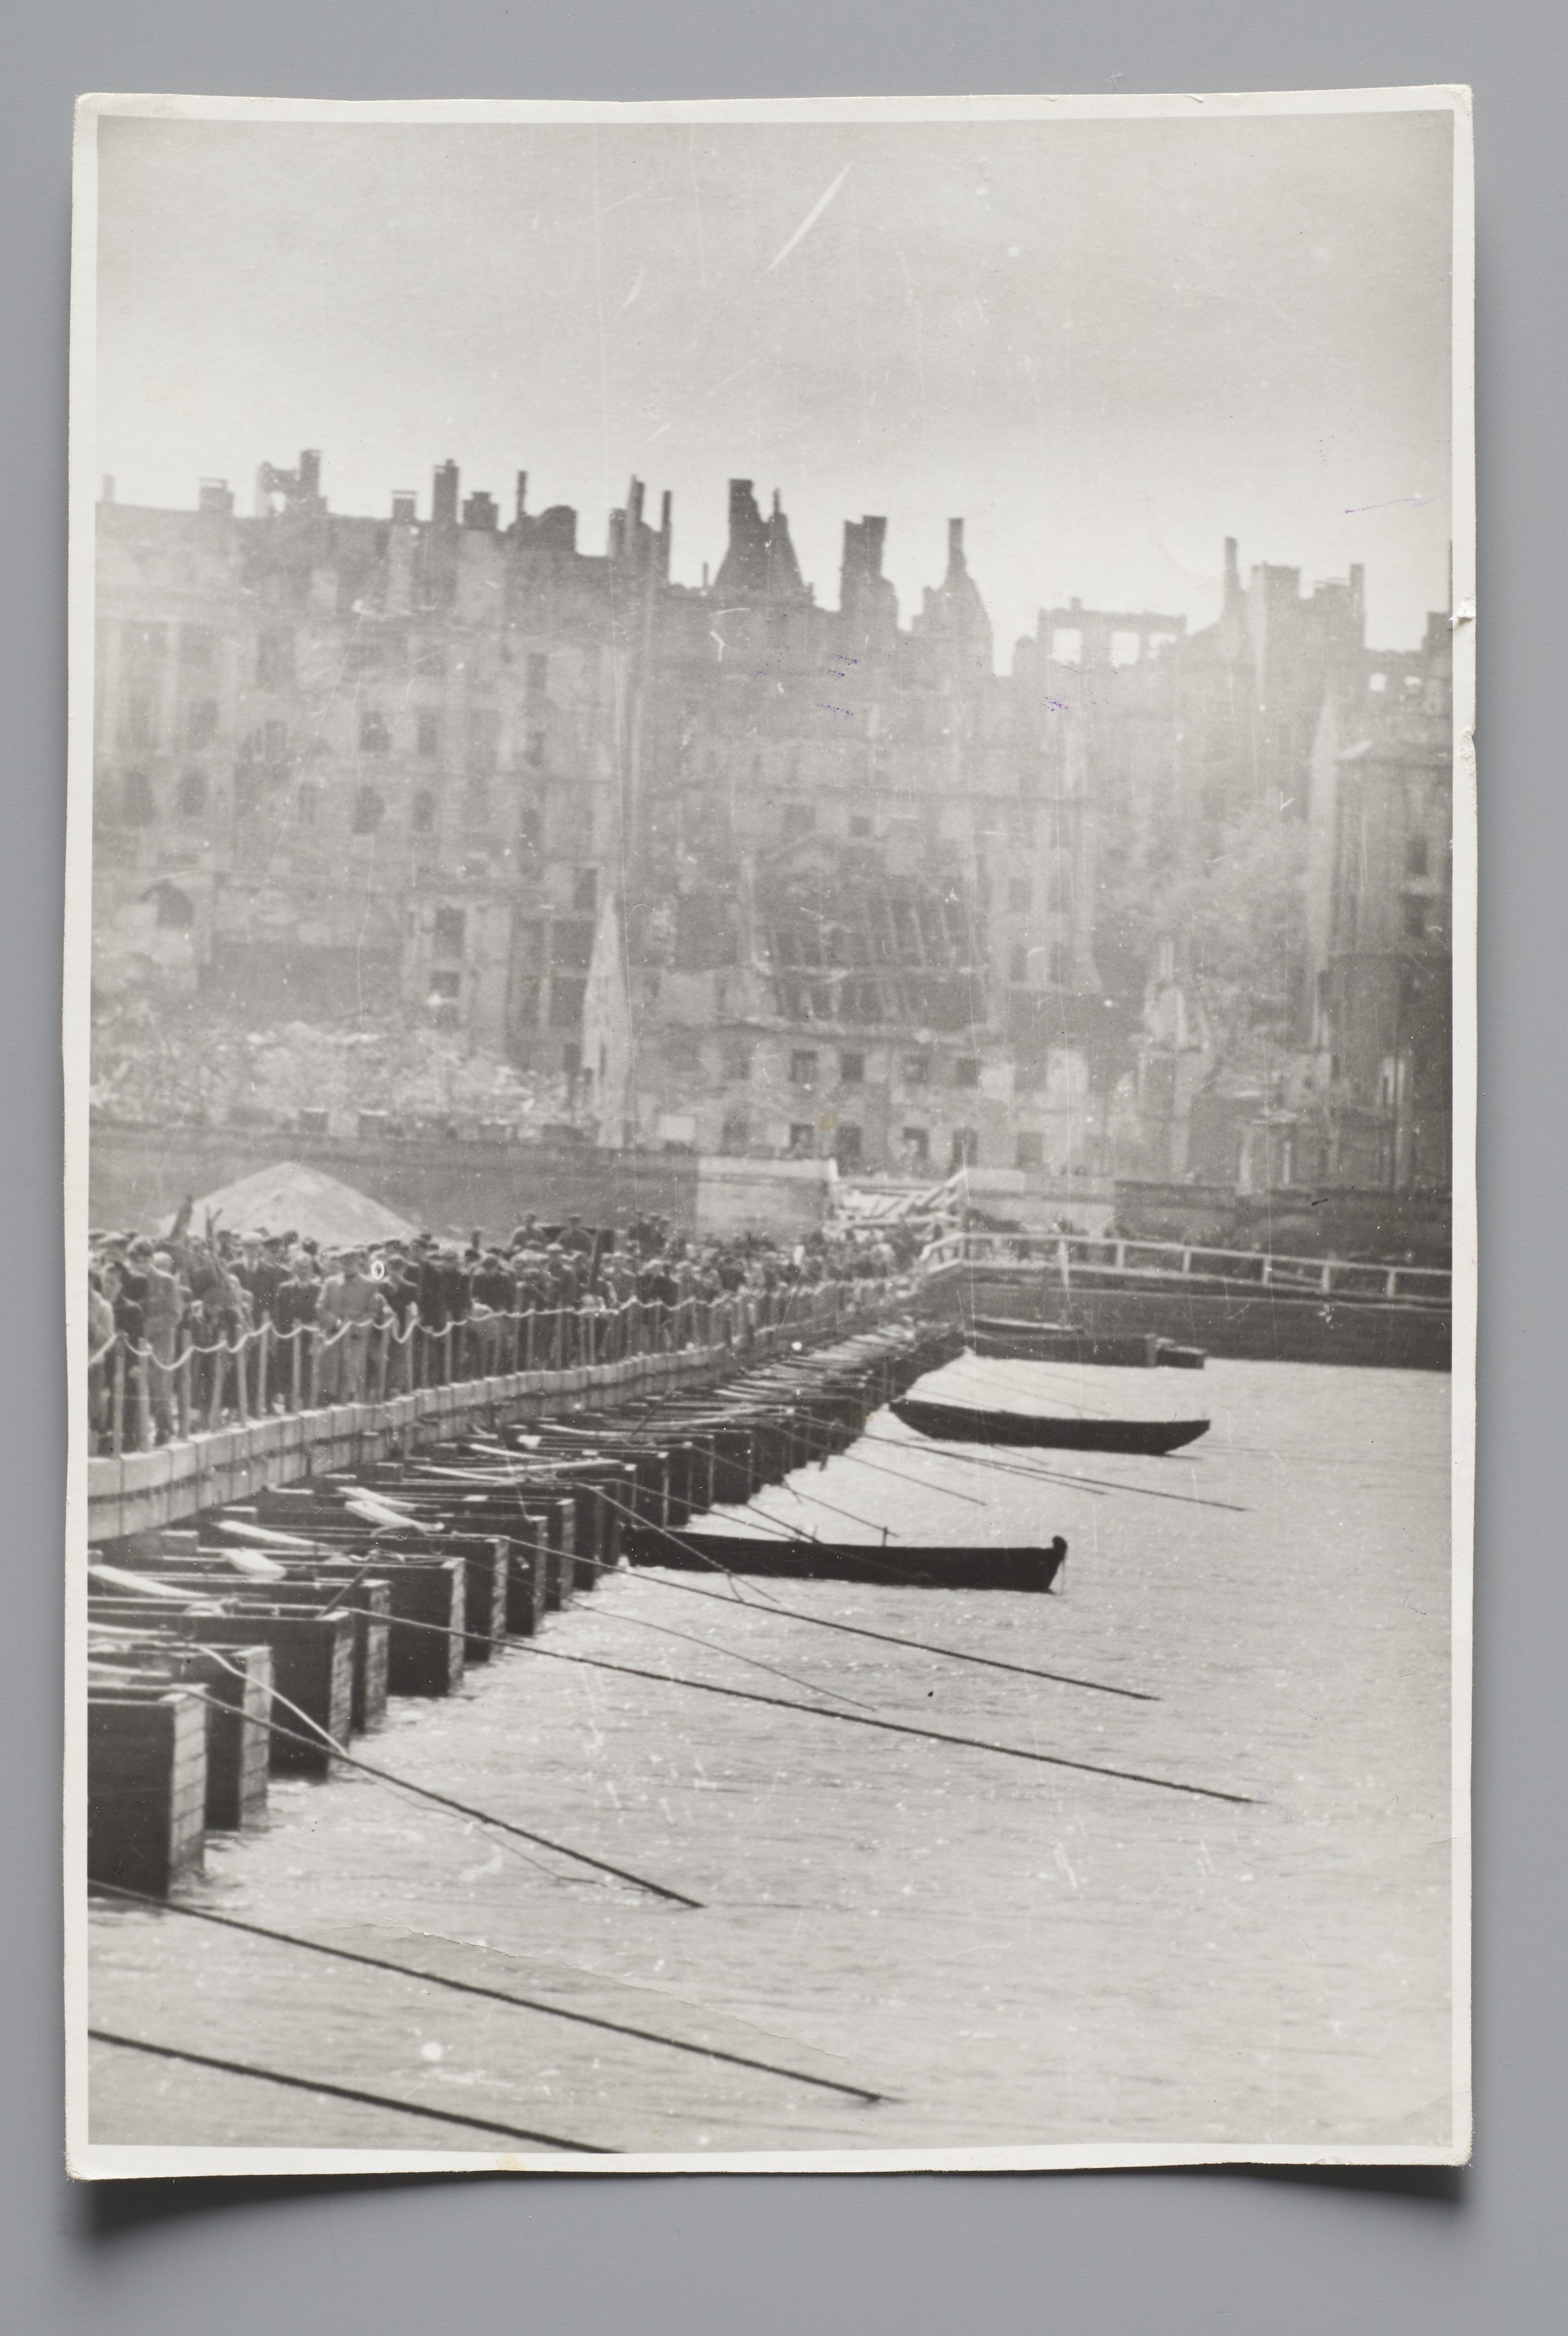 Фотографічний принт, що документує повернення варшав'ян до зруйнованого міста by Zofia Chomętowska - березень-квітень 1945 - 16,7 × 11,4 см 